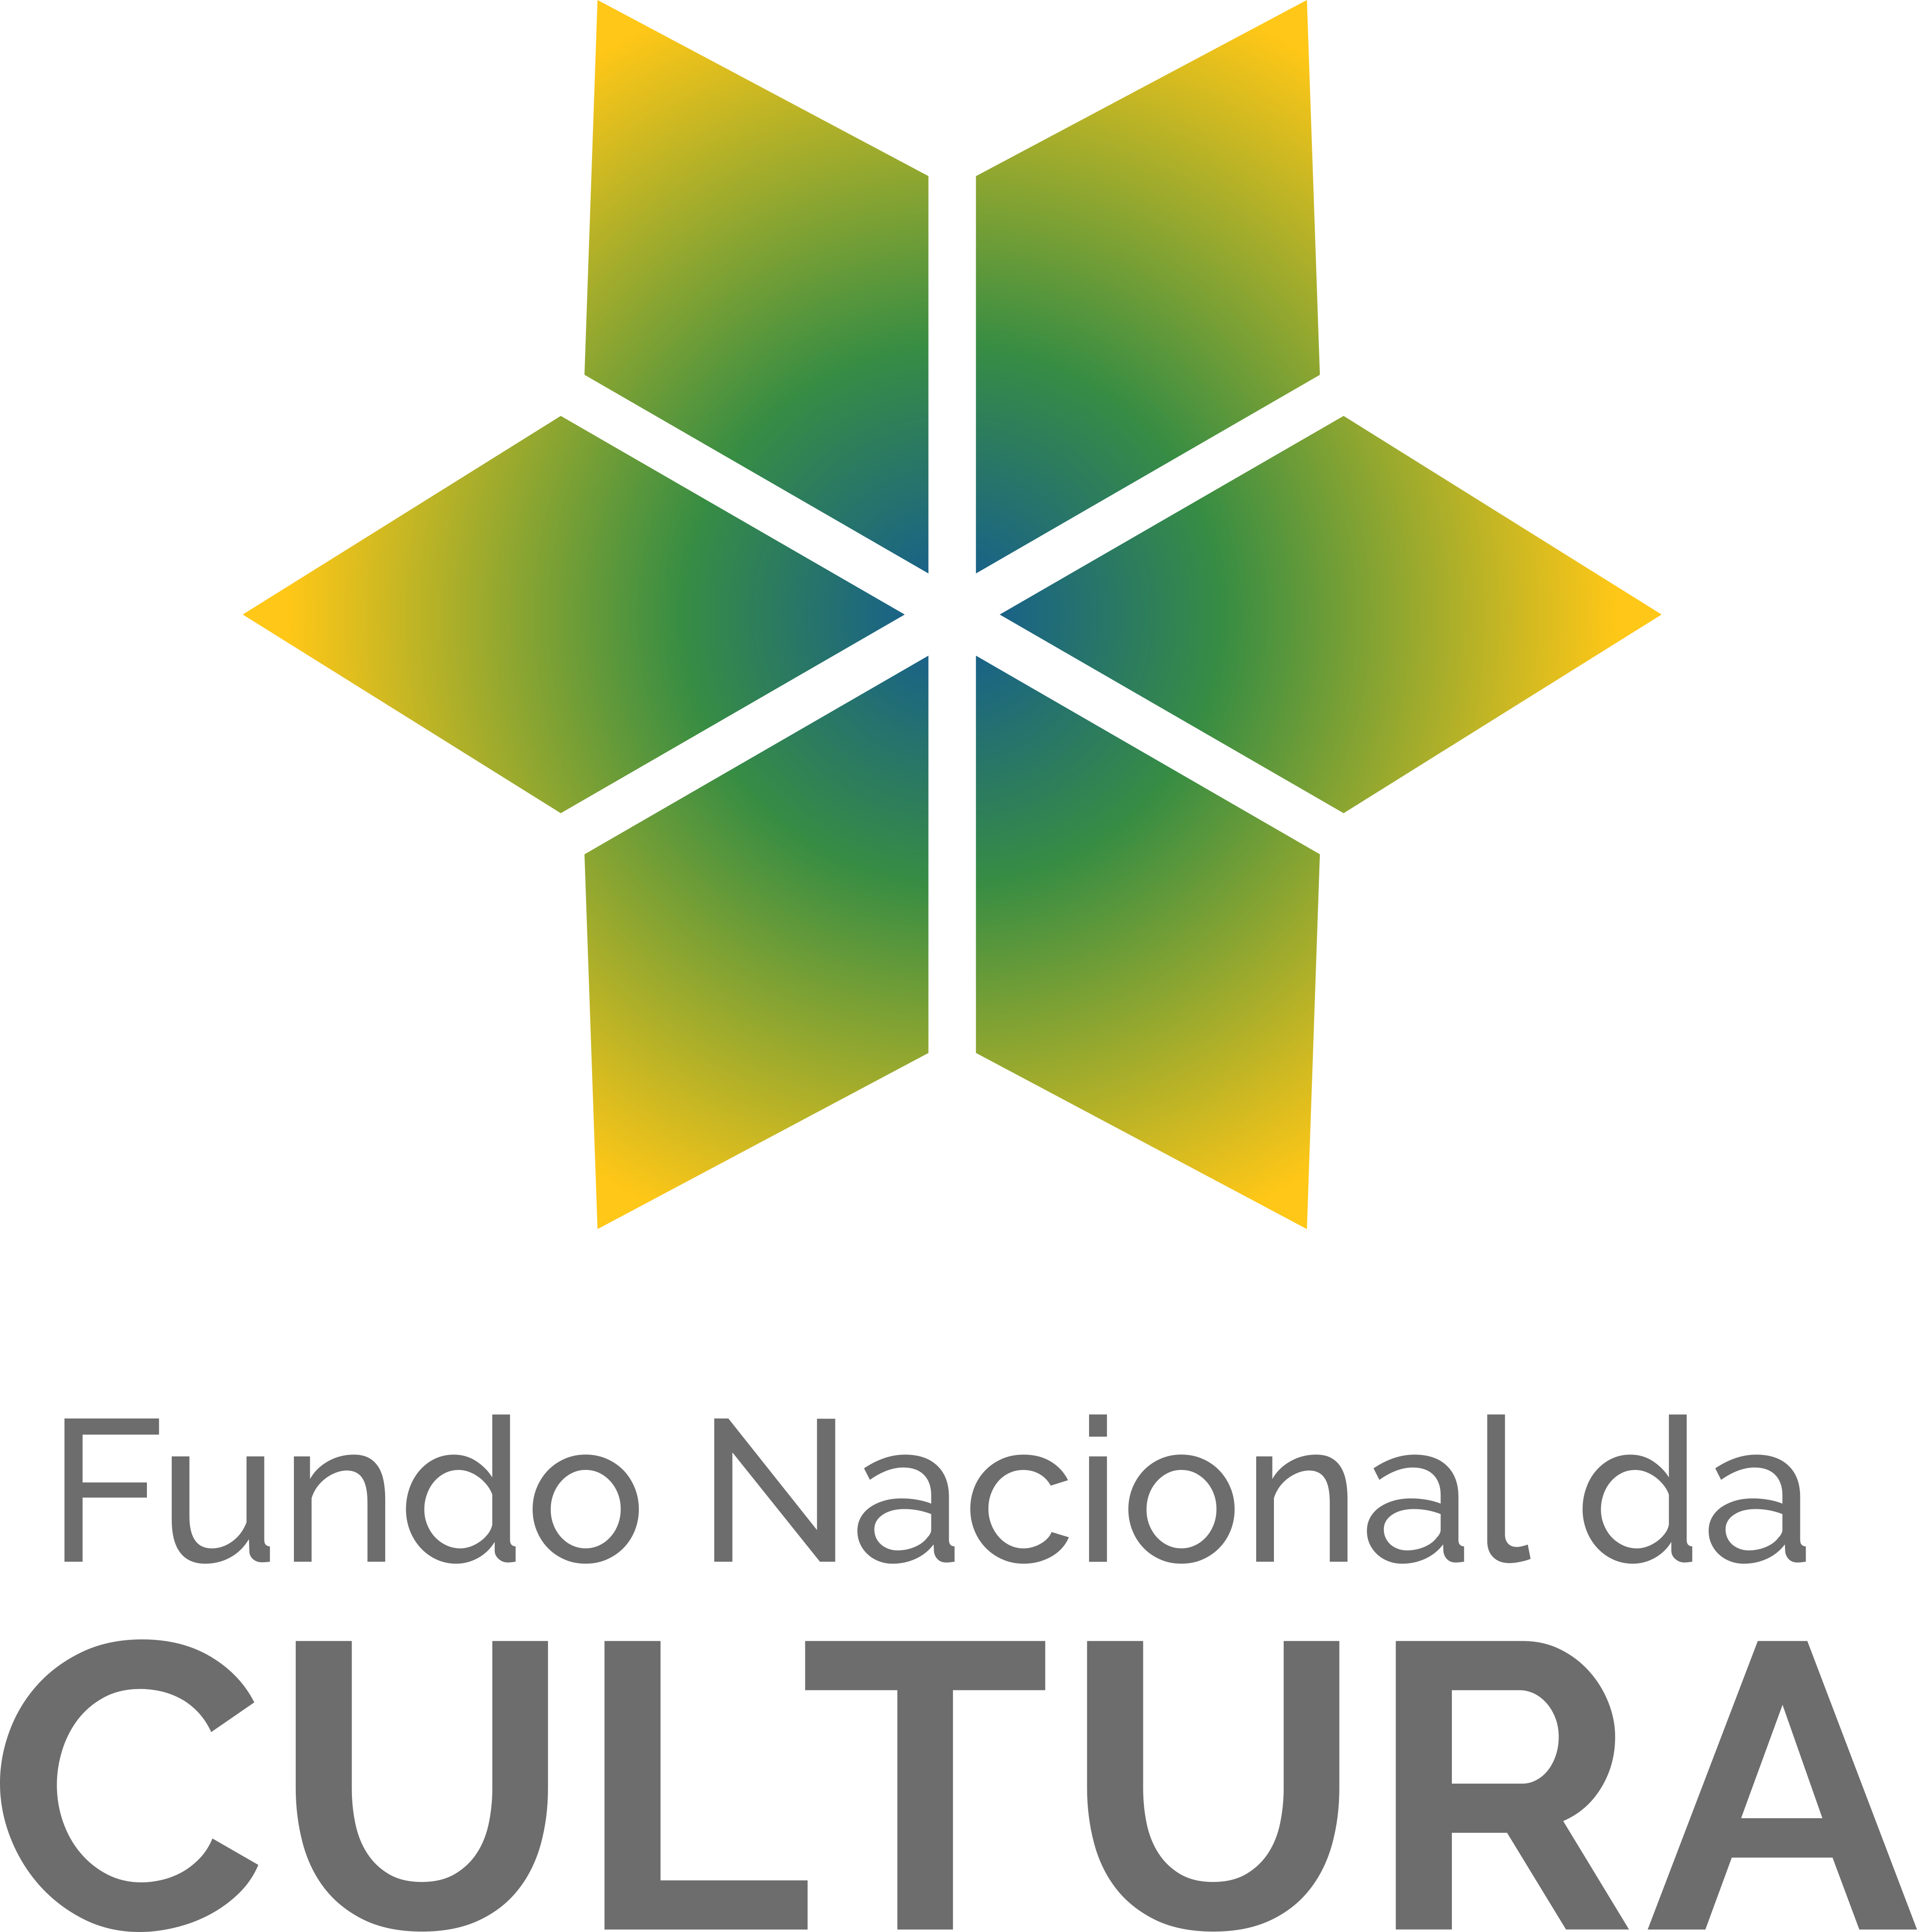 Fundo Nacional da Cultura Logo.